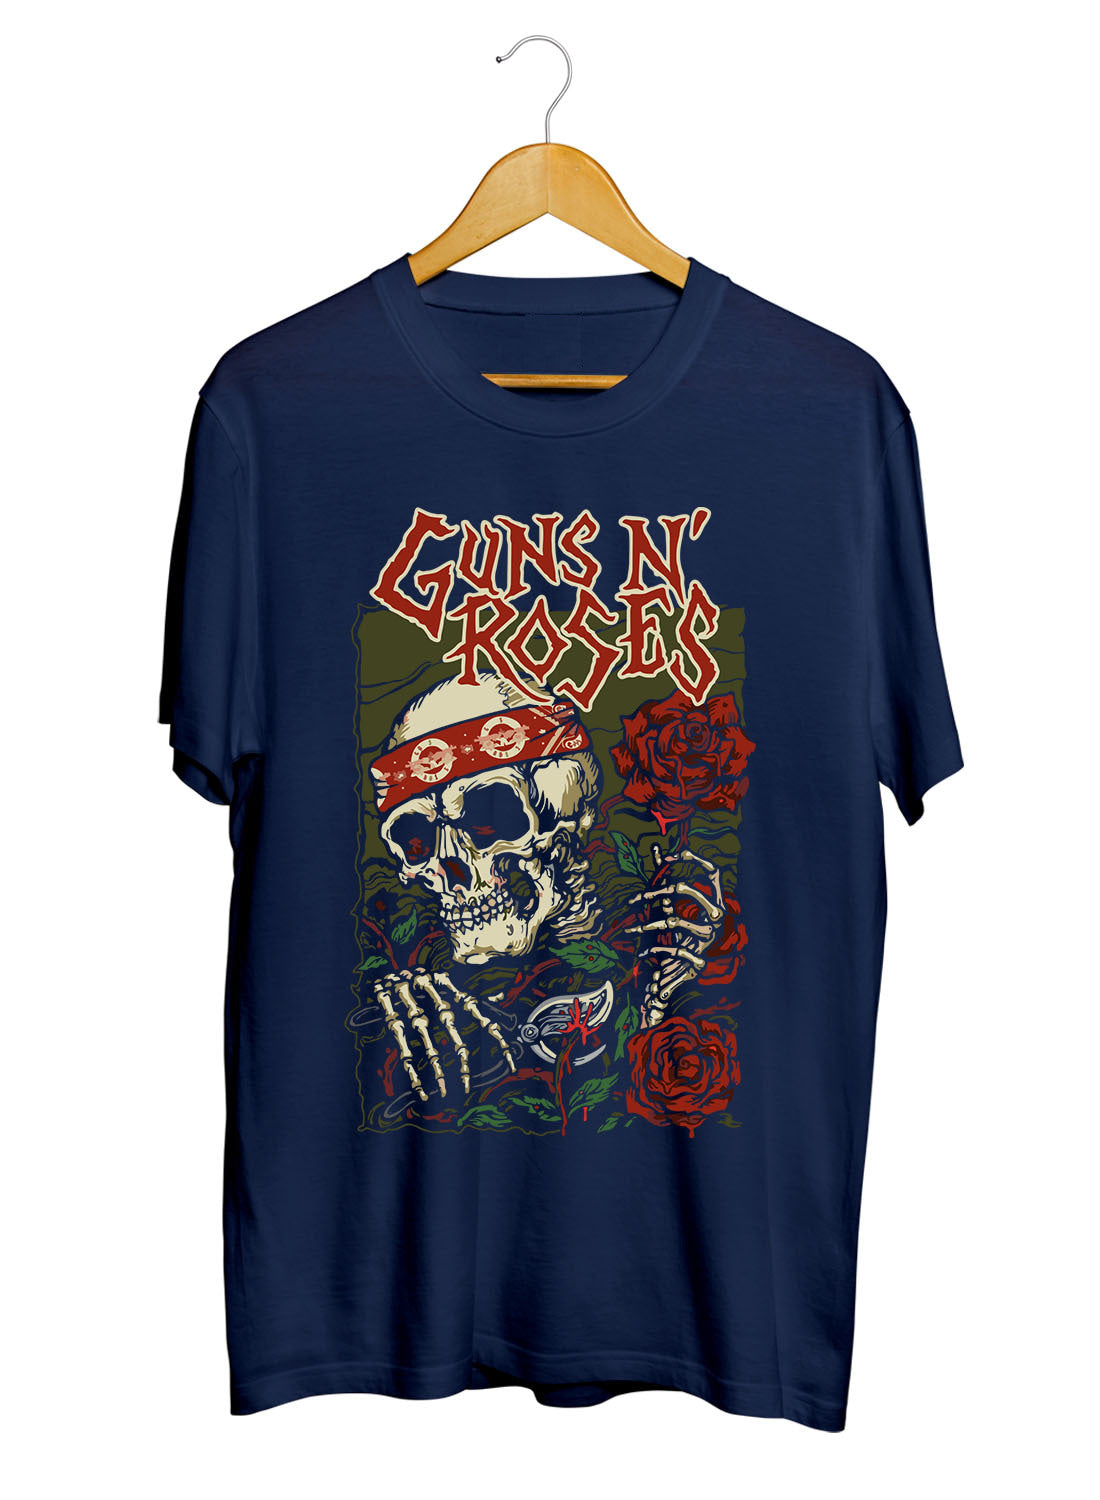 Guns N Roses Music Printed Unisex 100% Cotton Tshirt